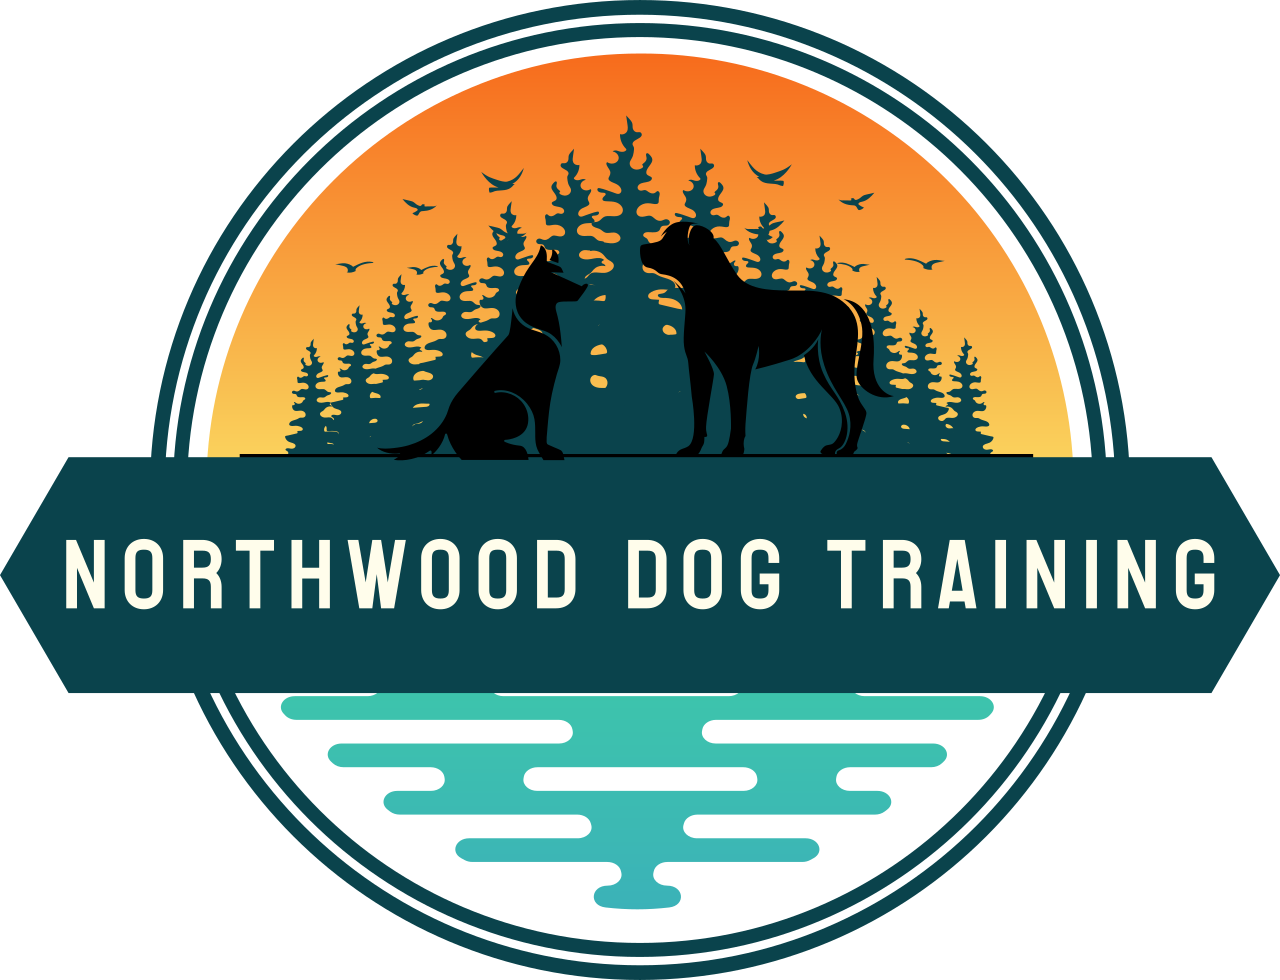 Northwood Dog Training